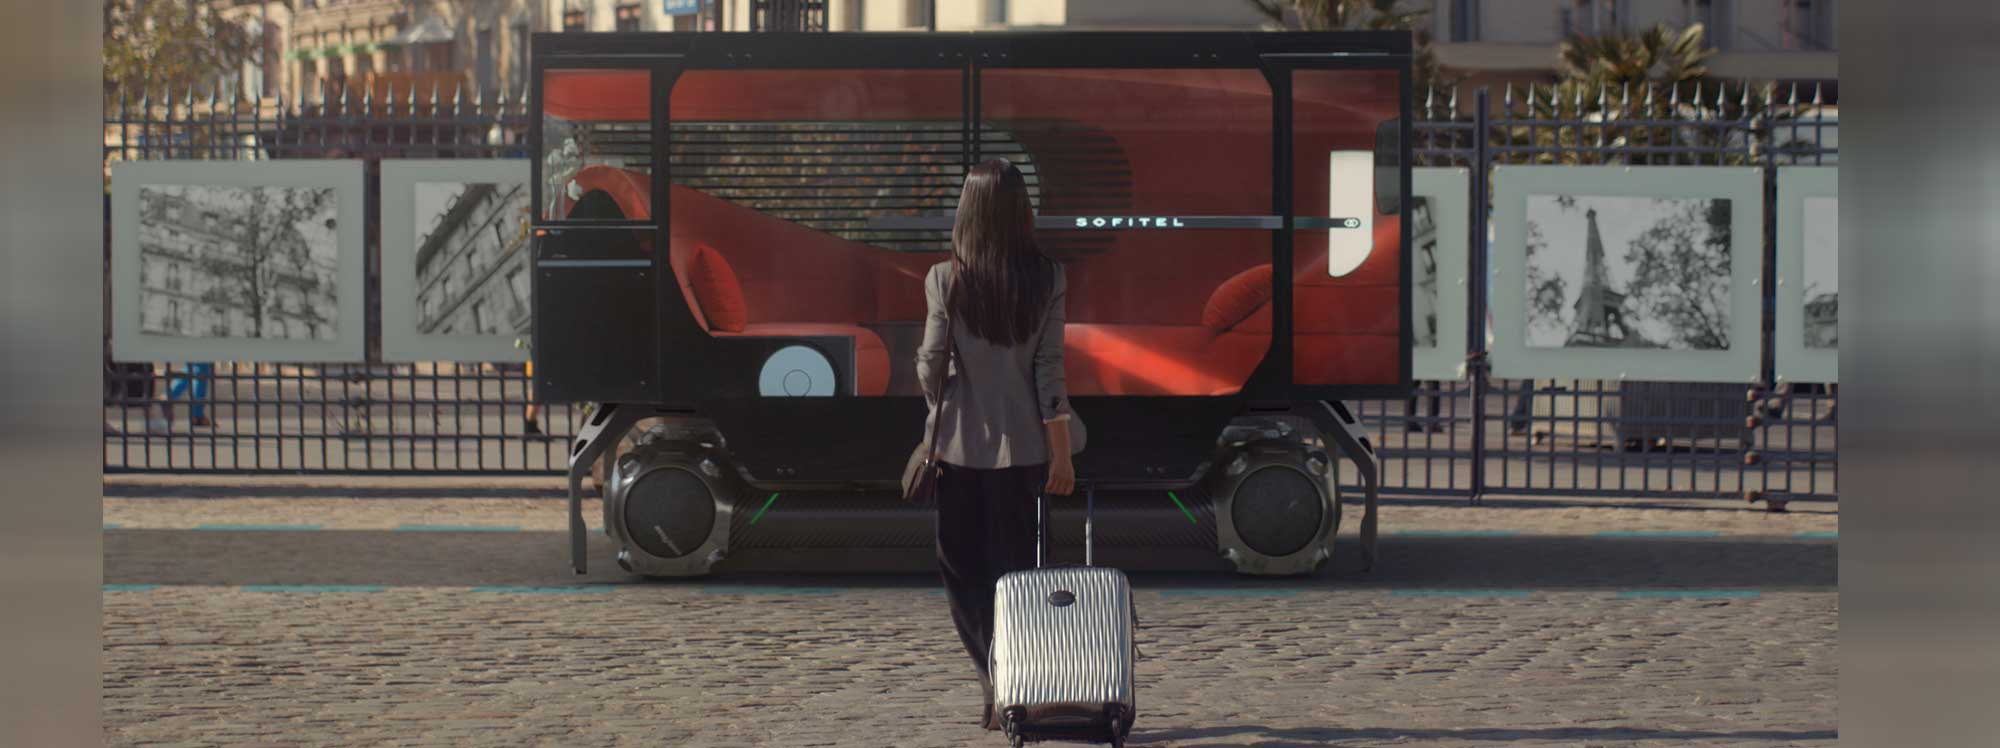 Citroën: Movilidad autónoma con robots de transporte